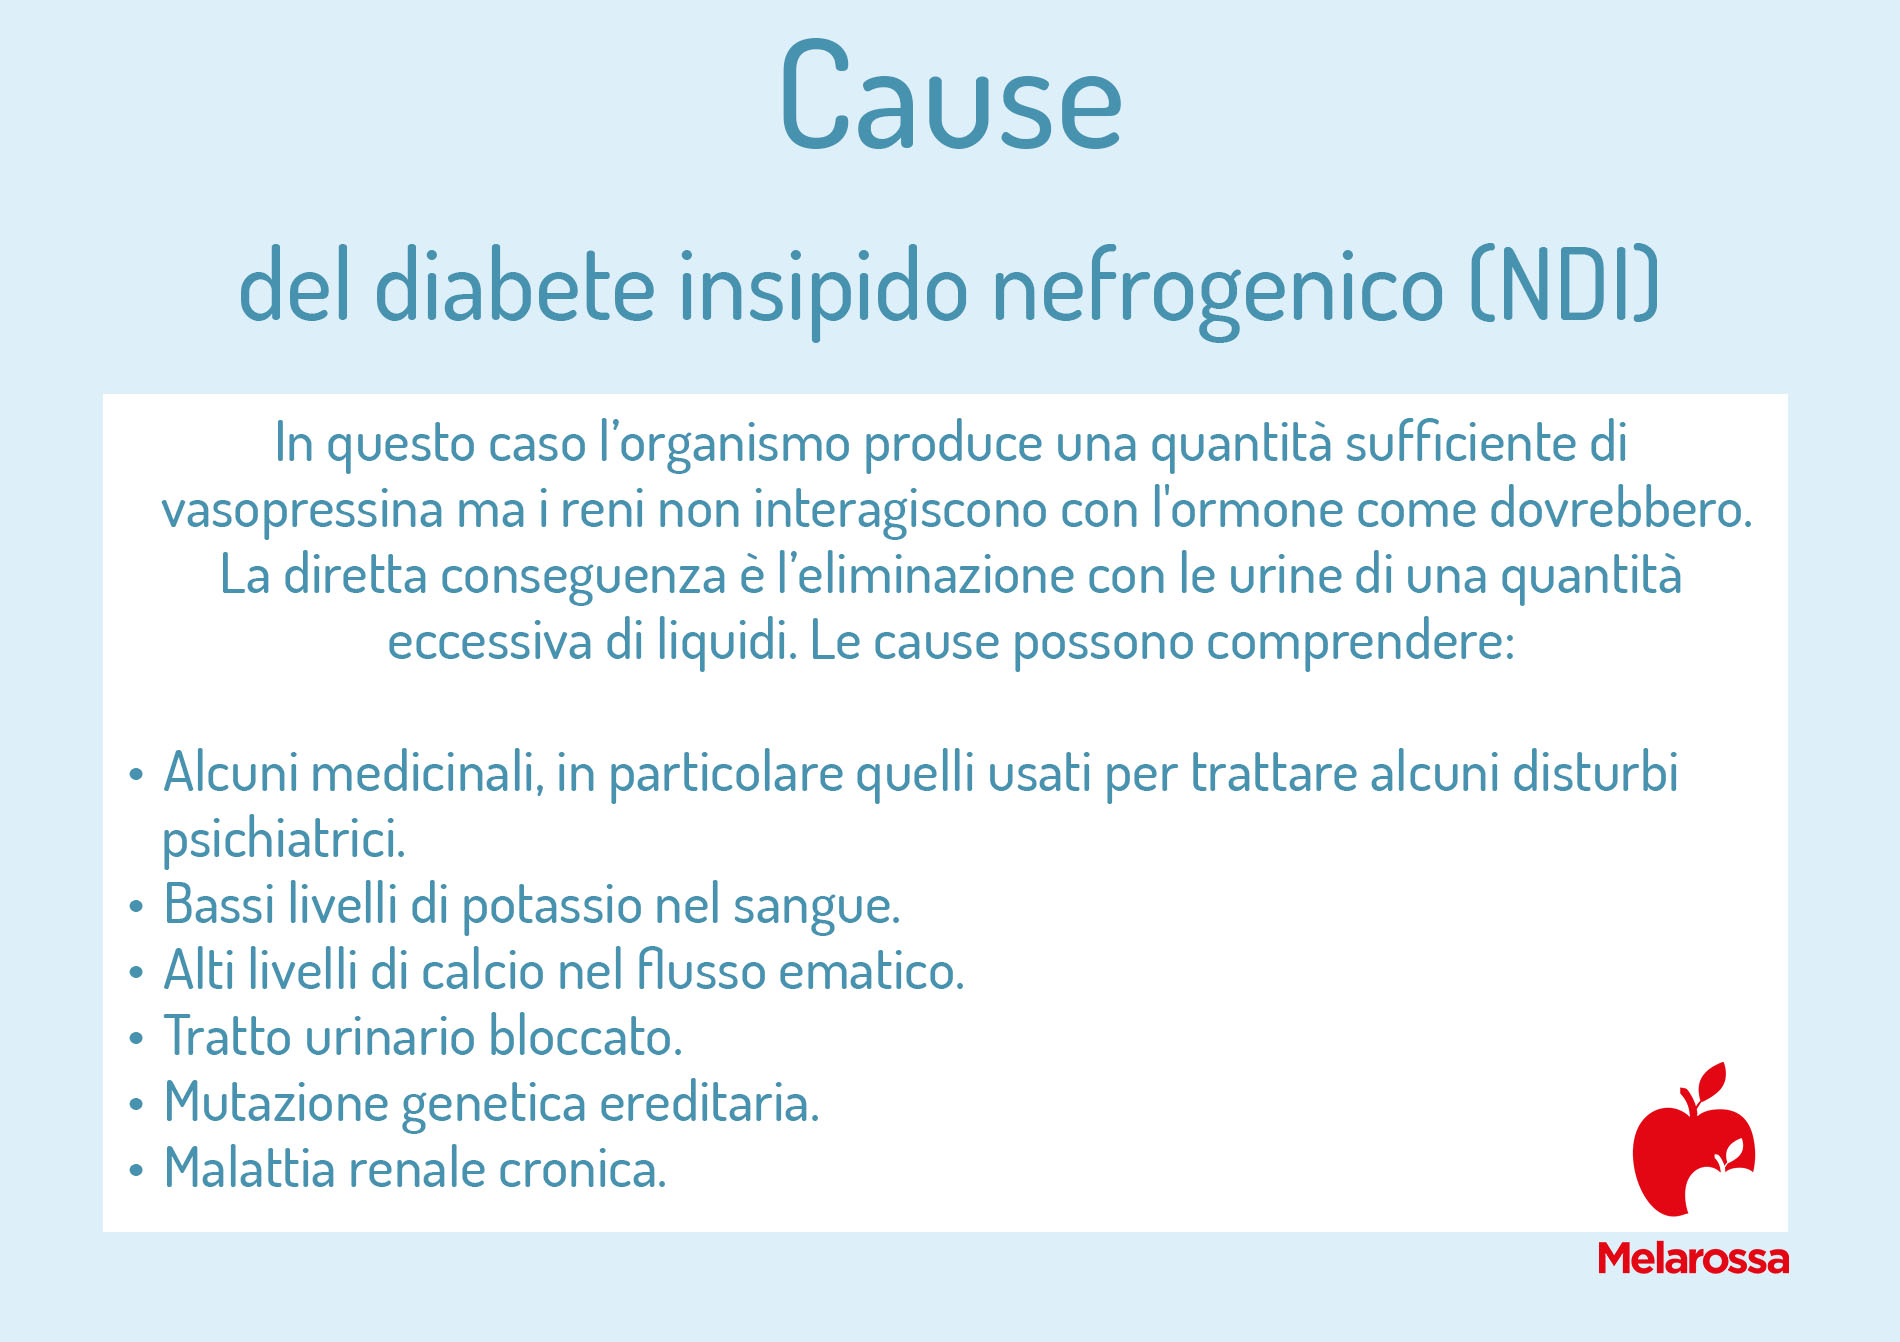 diabete insipido nefrogenico: cause